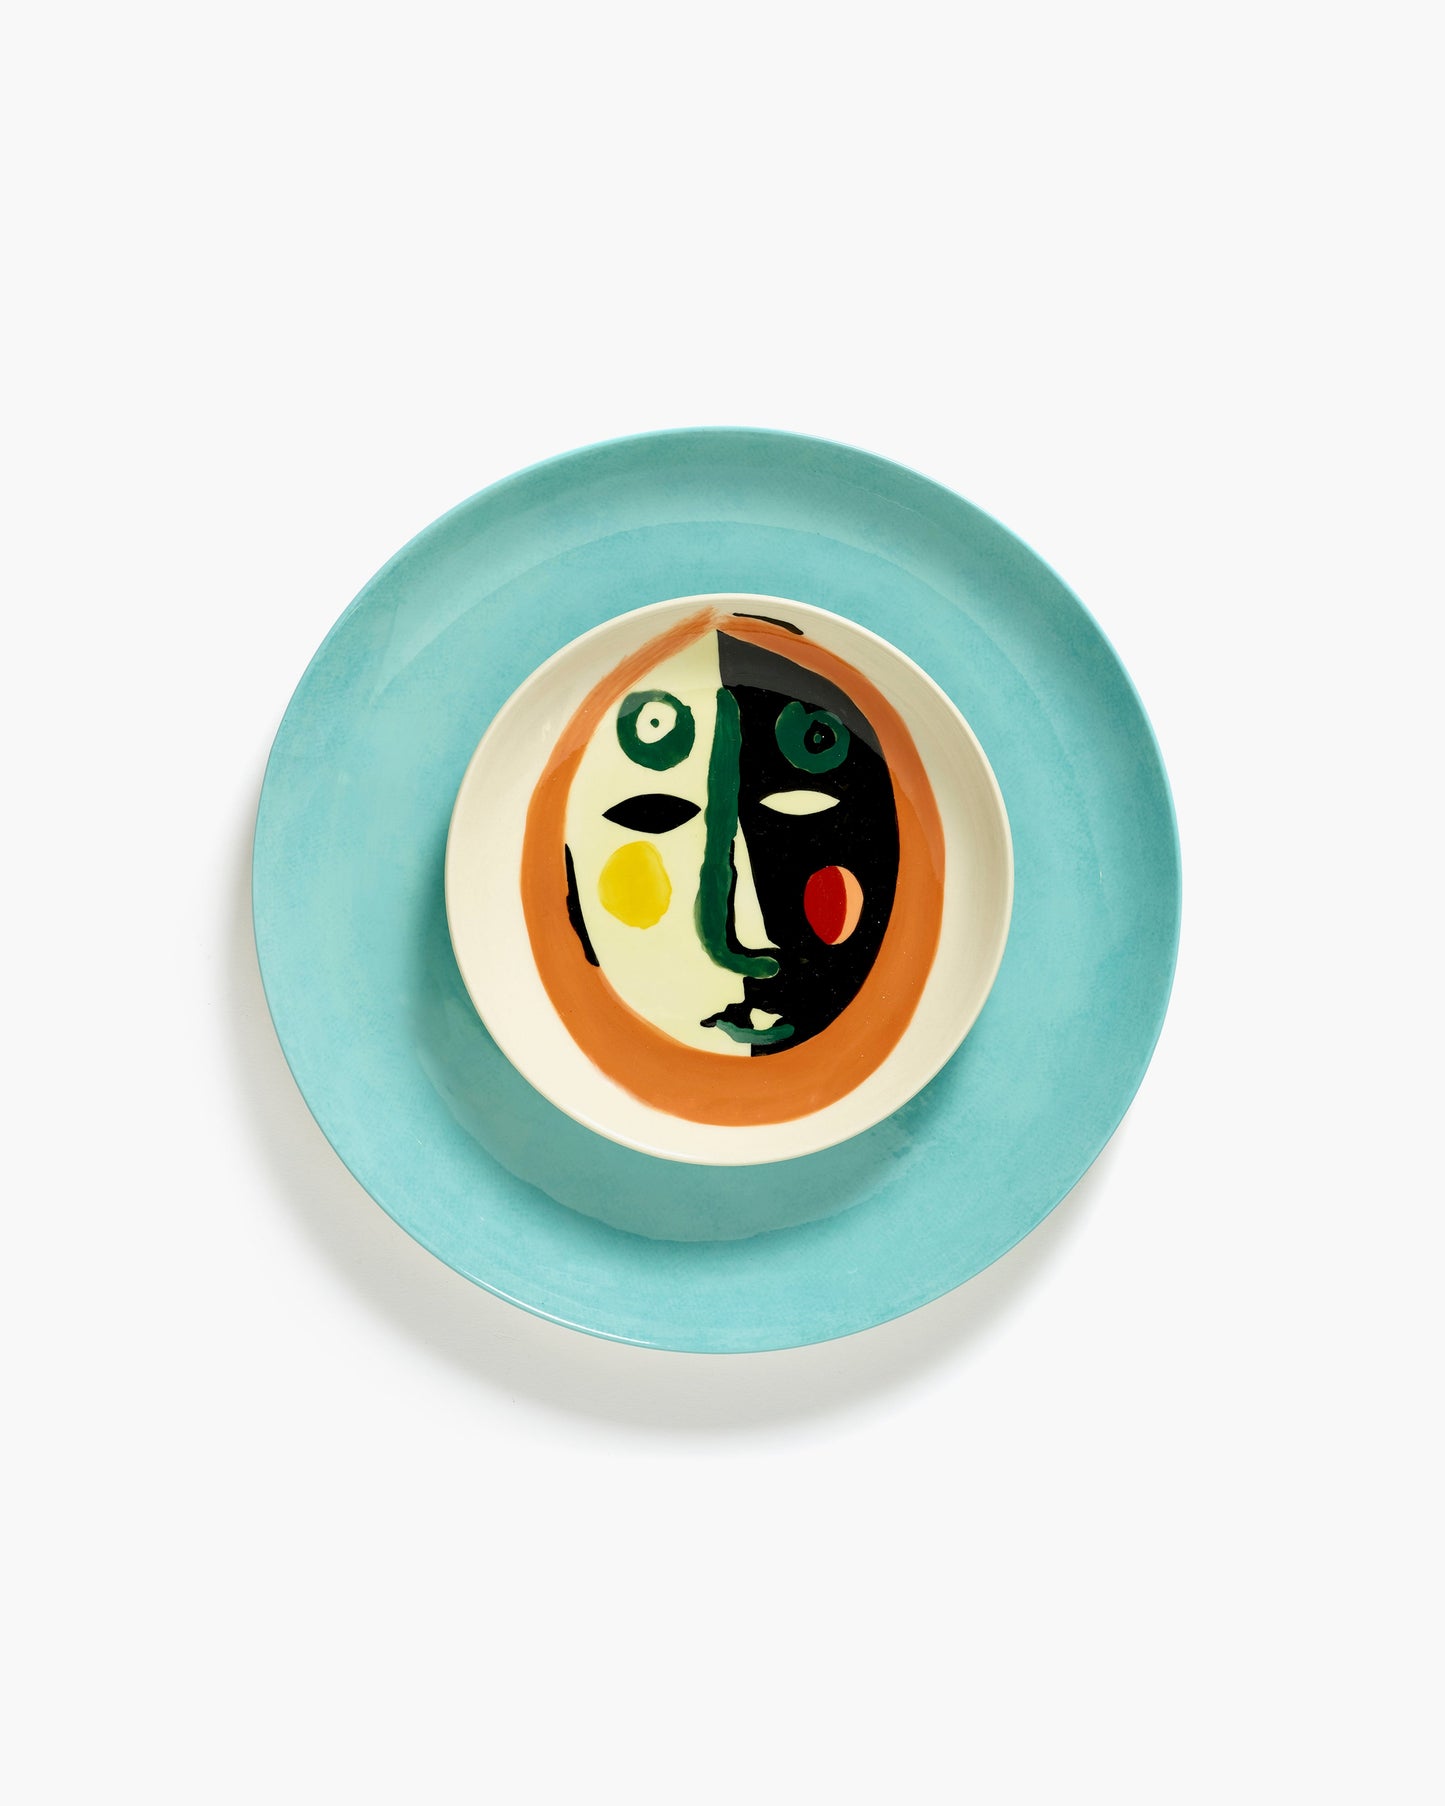 FEAST - Dessert plate with motif: face 1